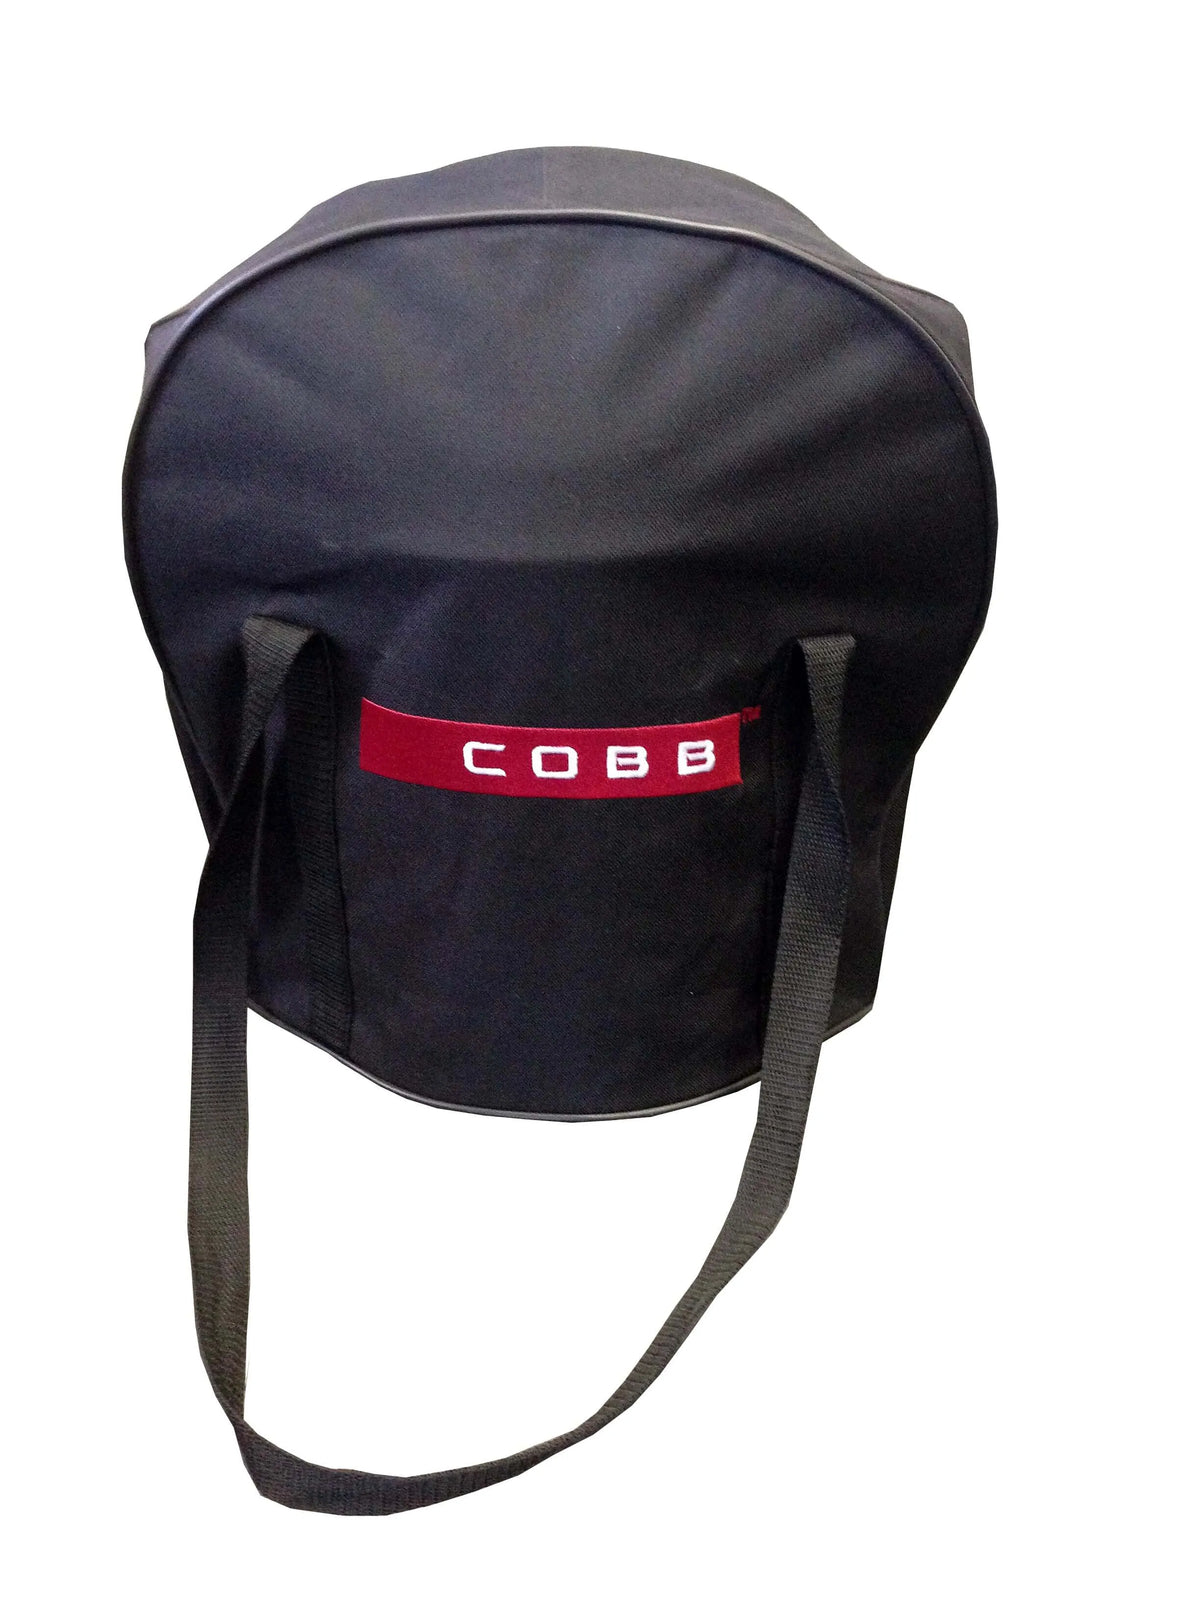 COBB Carrier Bag for Premier+ - RIBI Malta